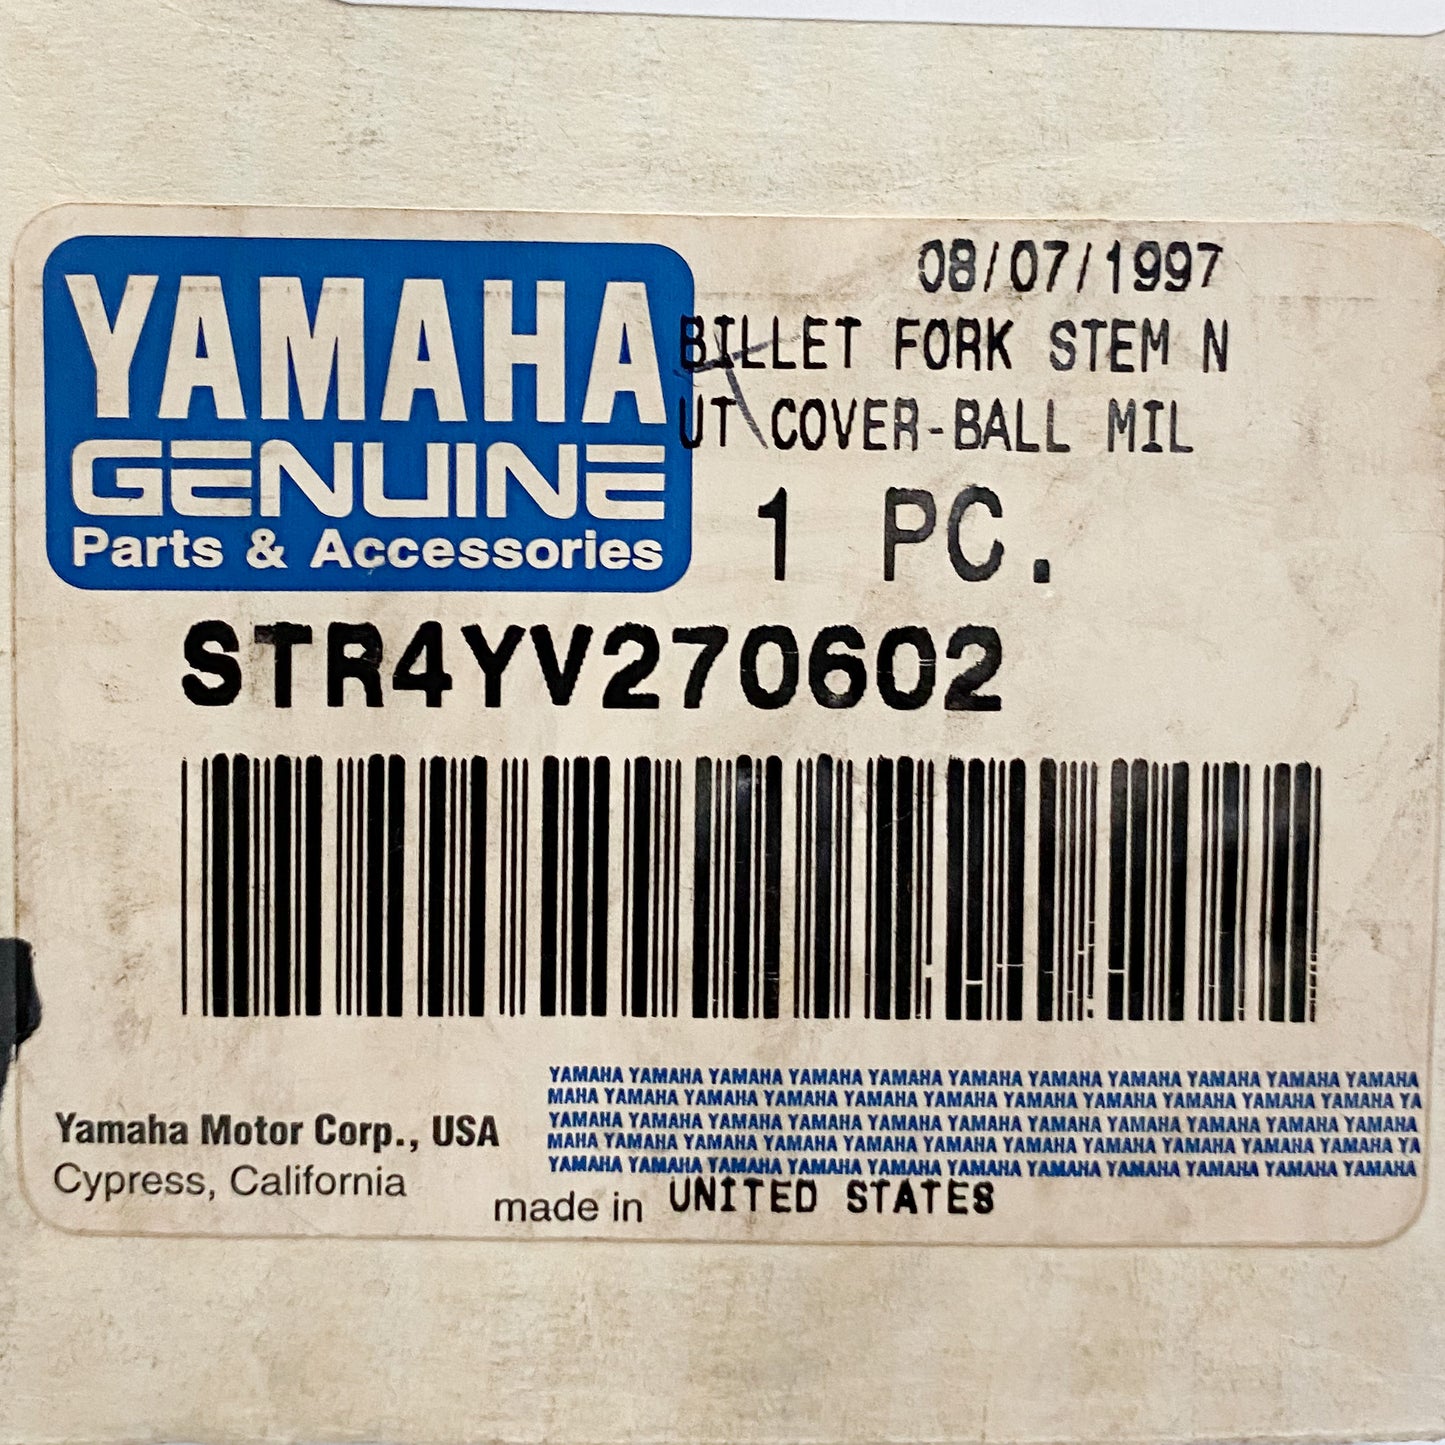 Yamaha Billet Fork Stem Nut Cover Ball Milled  STR-4YV27-06-02